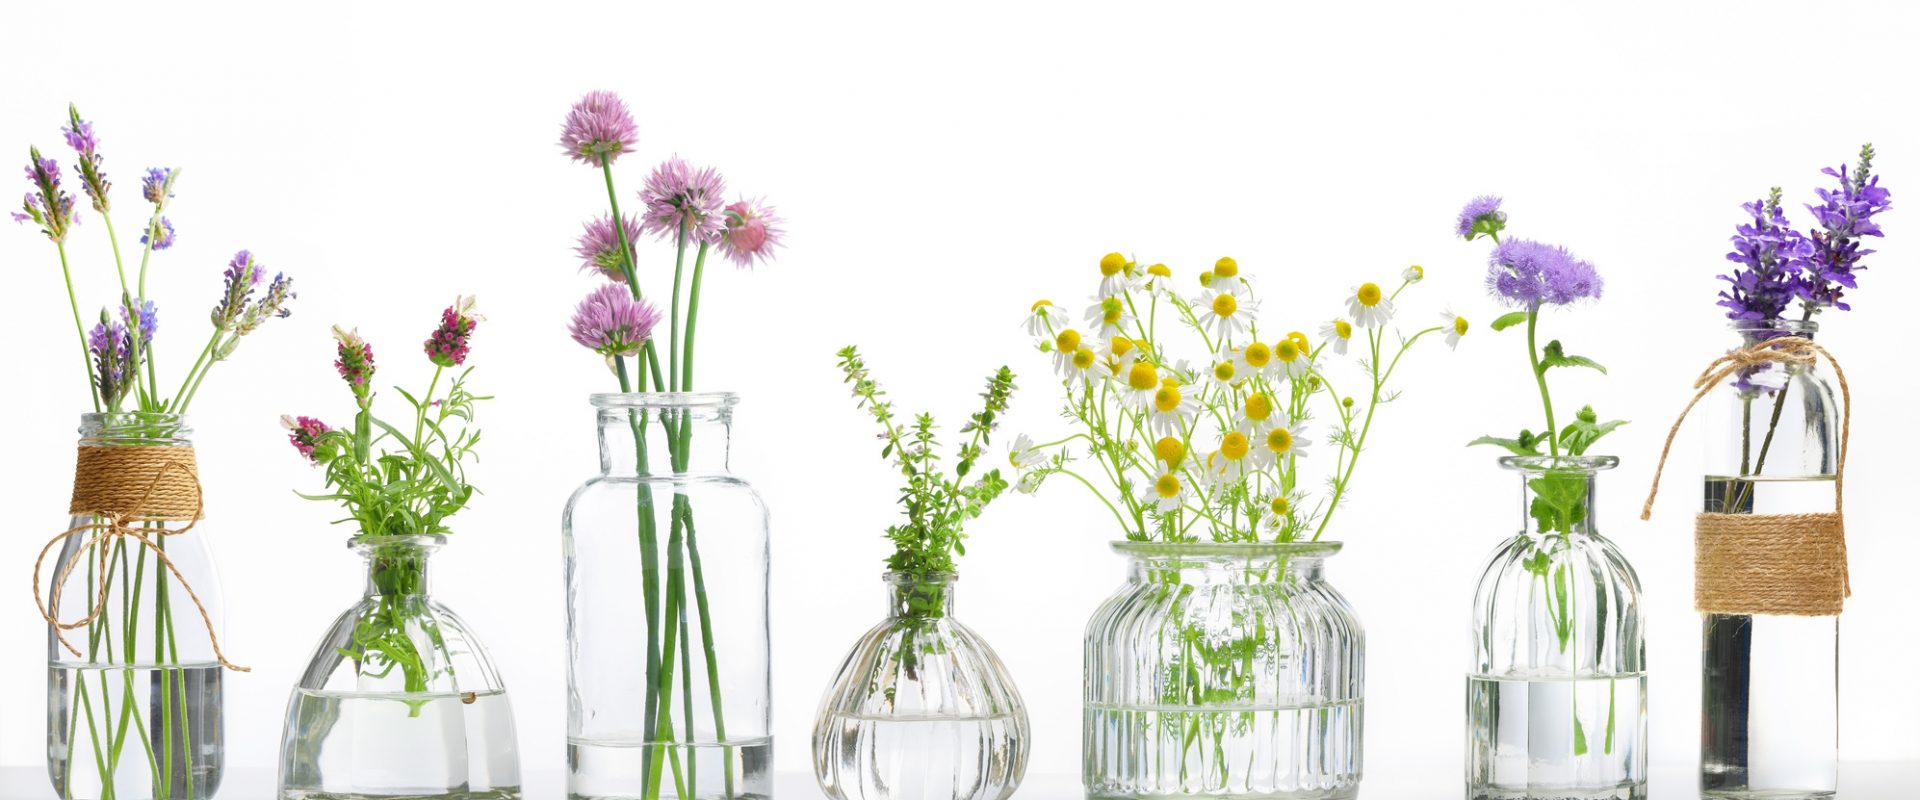 Jakie leki homeopatyczne zastosować na ból gardła? W szklanych wazonikach o różnym kształcie stoją bukiety kwiatów polnych i ziół.